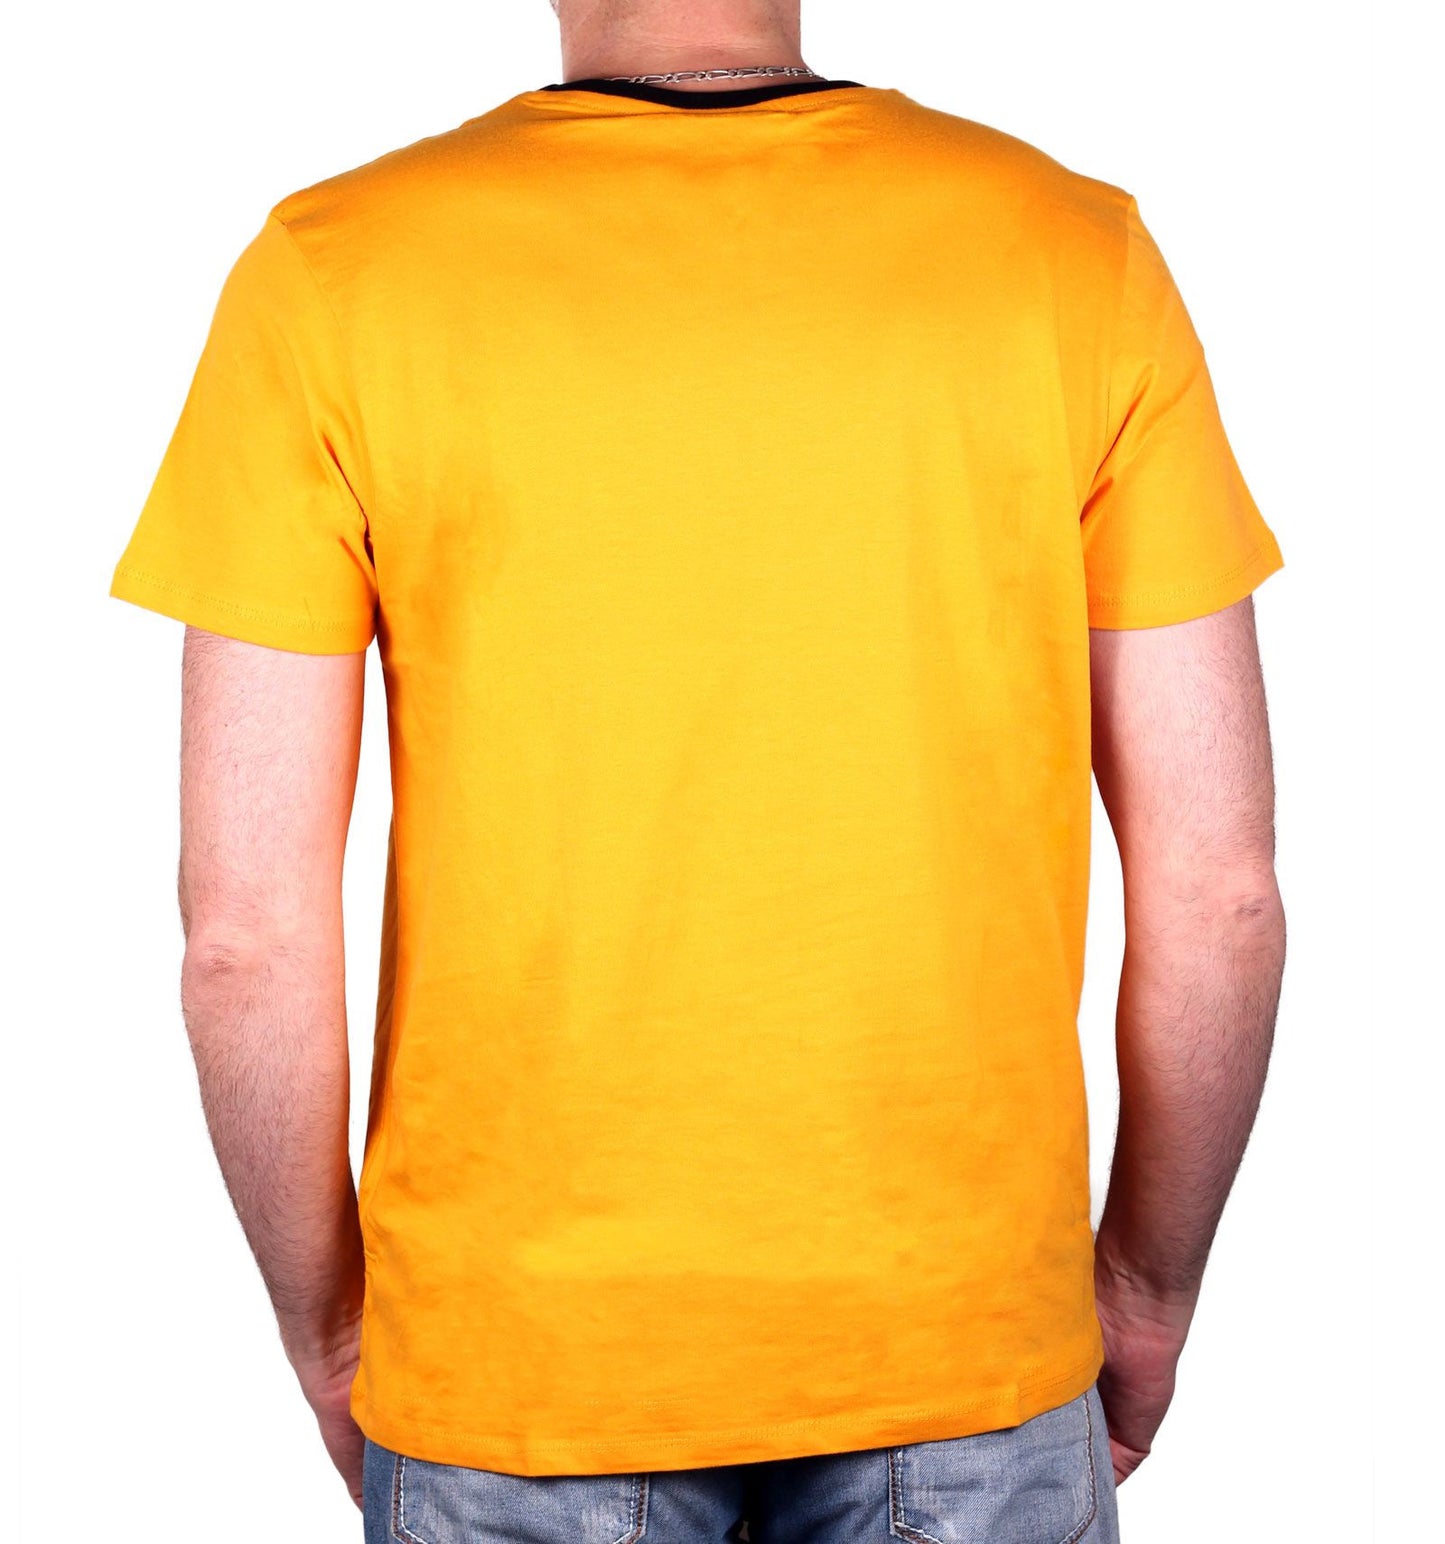 Star Trek T-Shirt - Kirk Yellow Costume